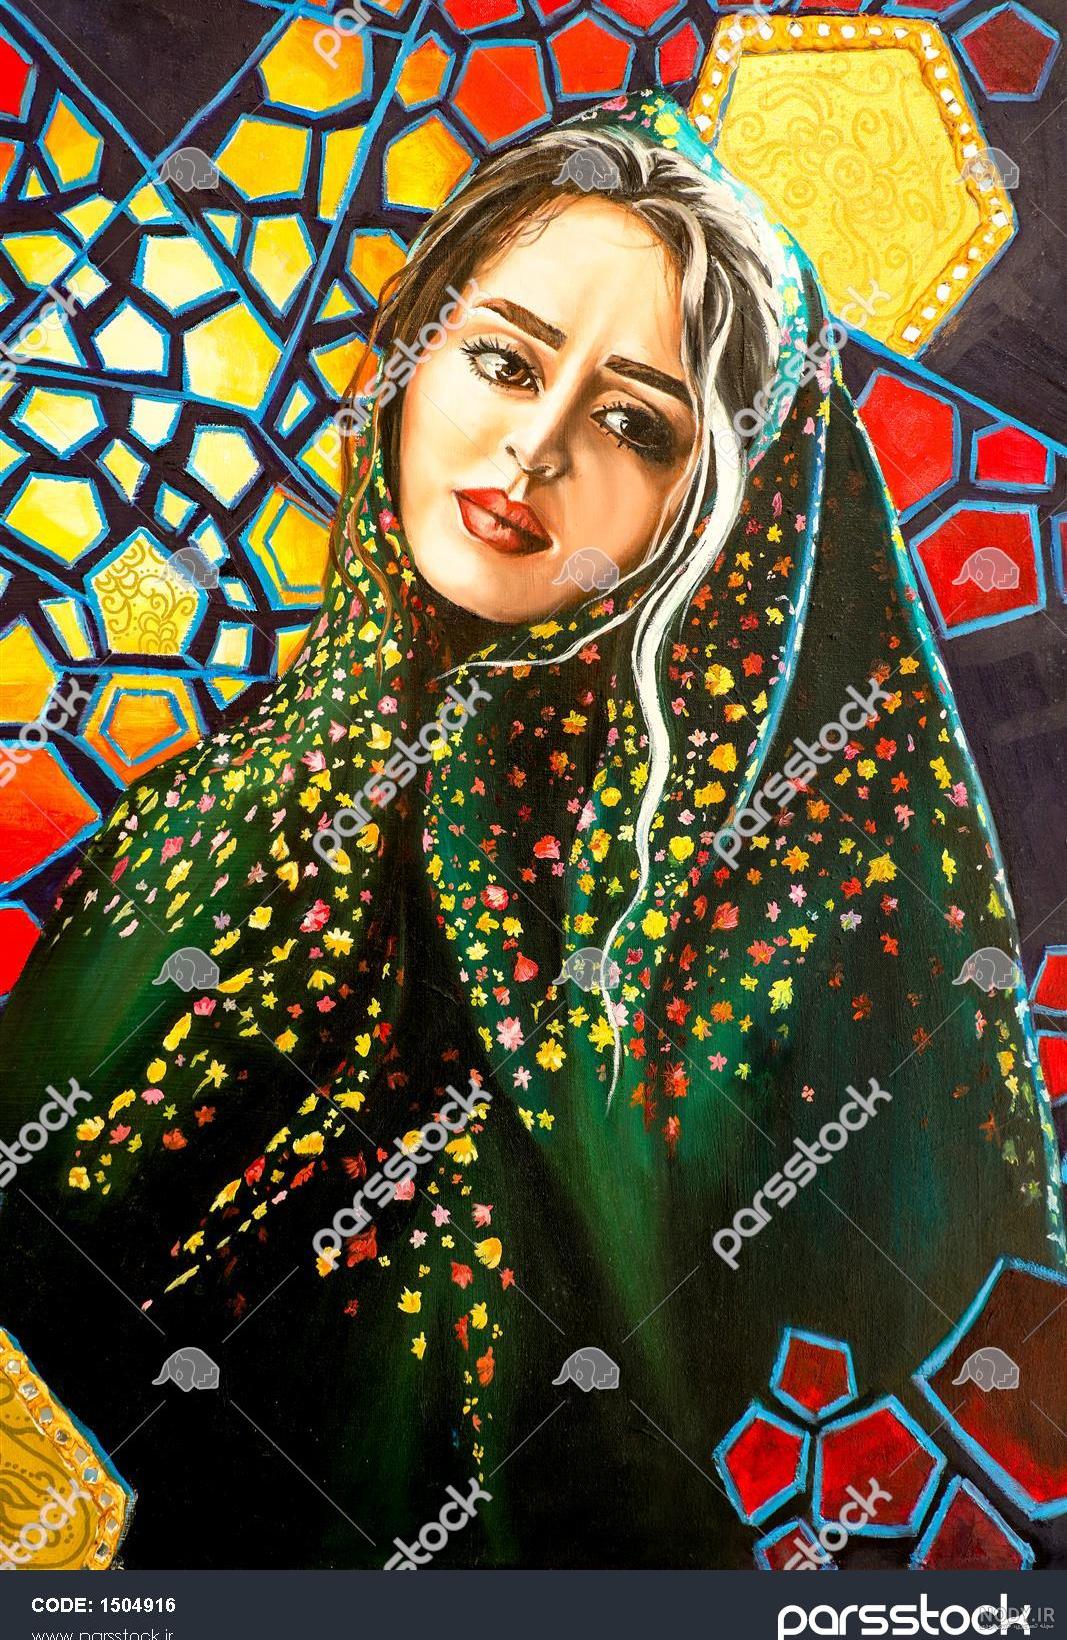 نقاشی ایرانی قدیمی